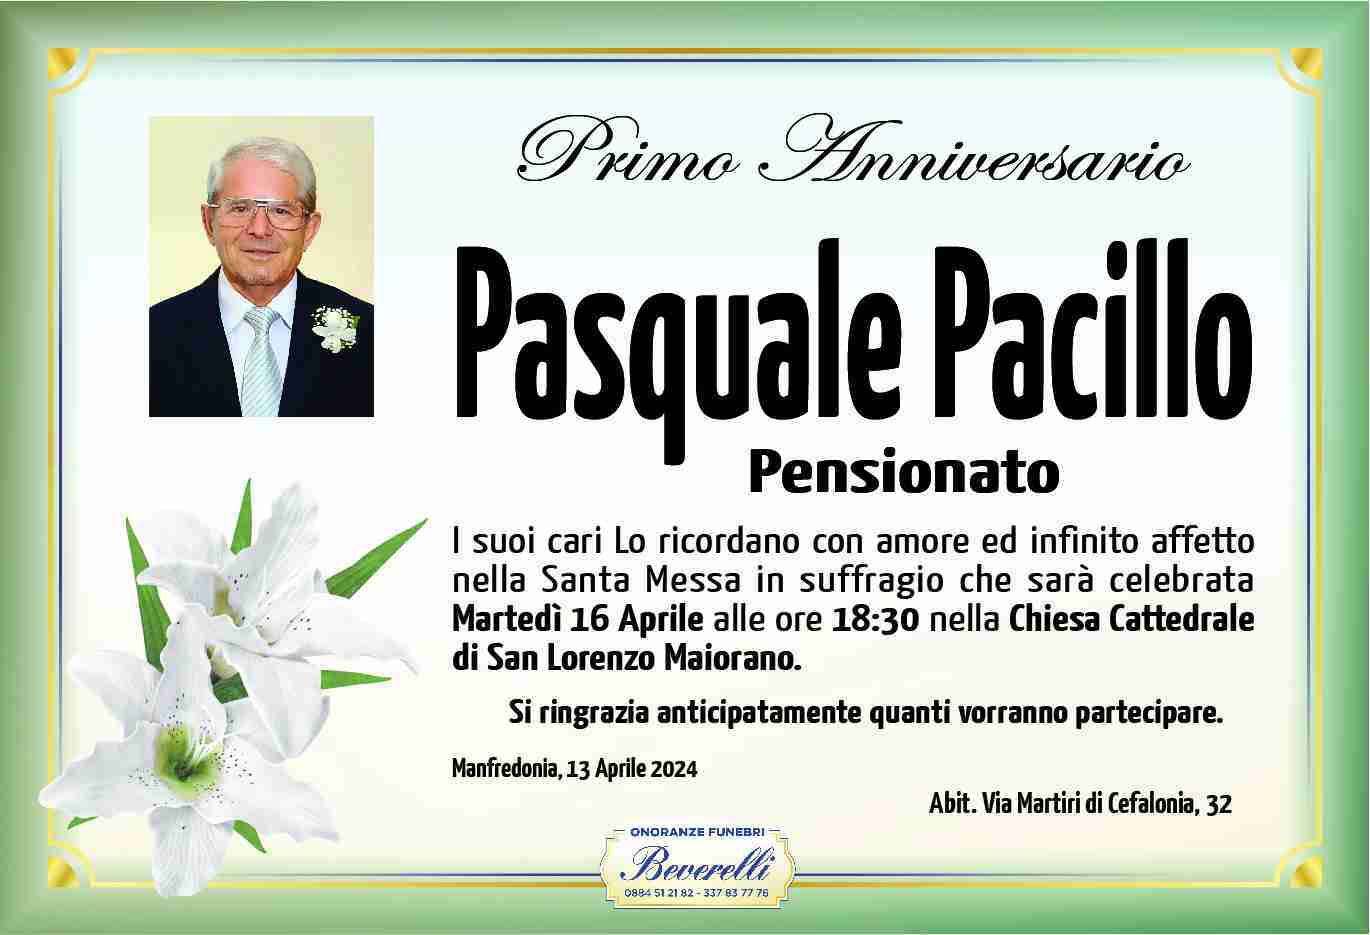 Pasquale Pacillo